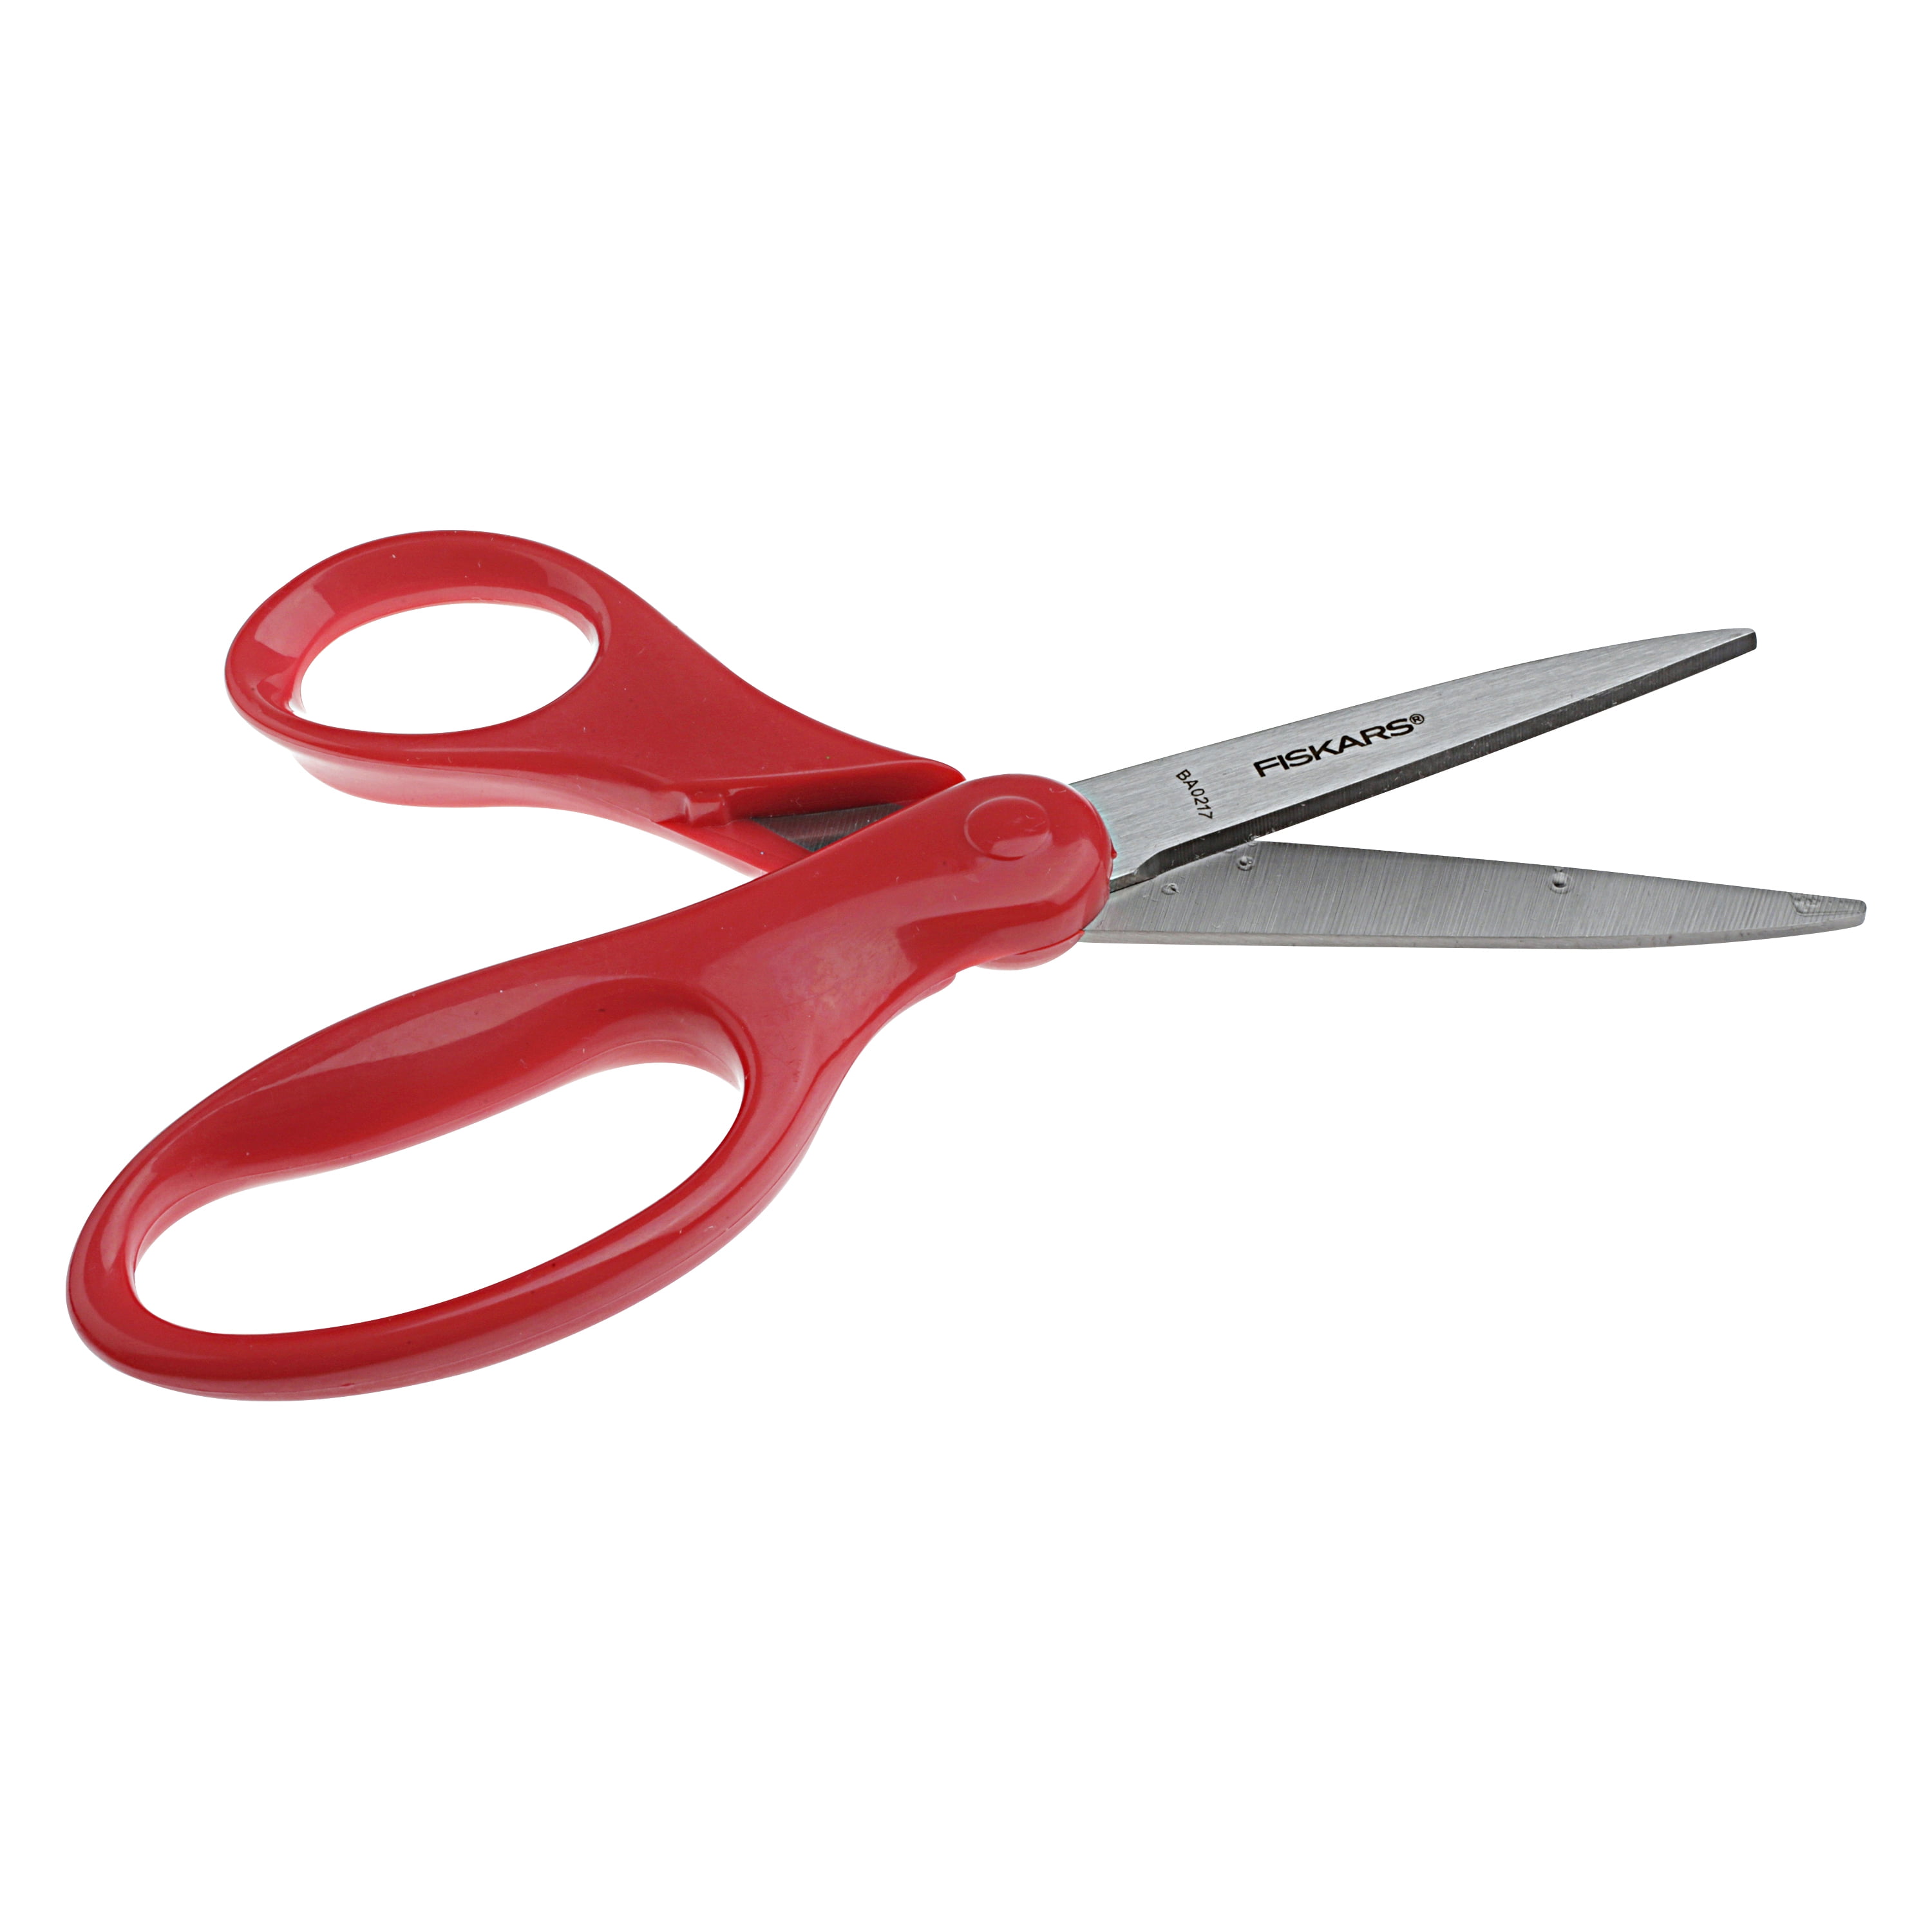 Fiskars Student Scissors - Shop Tools & Equipment at H-E-B